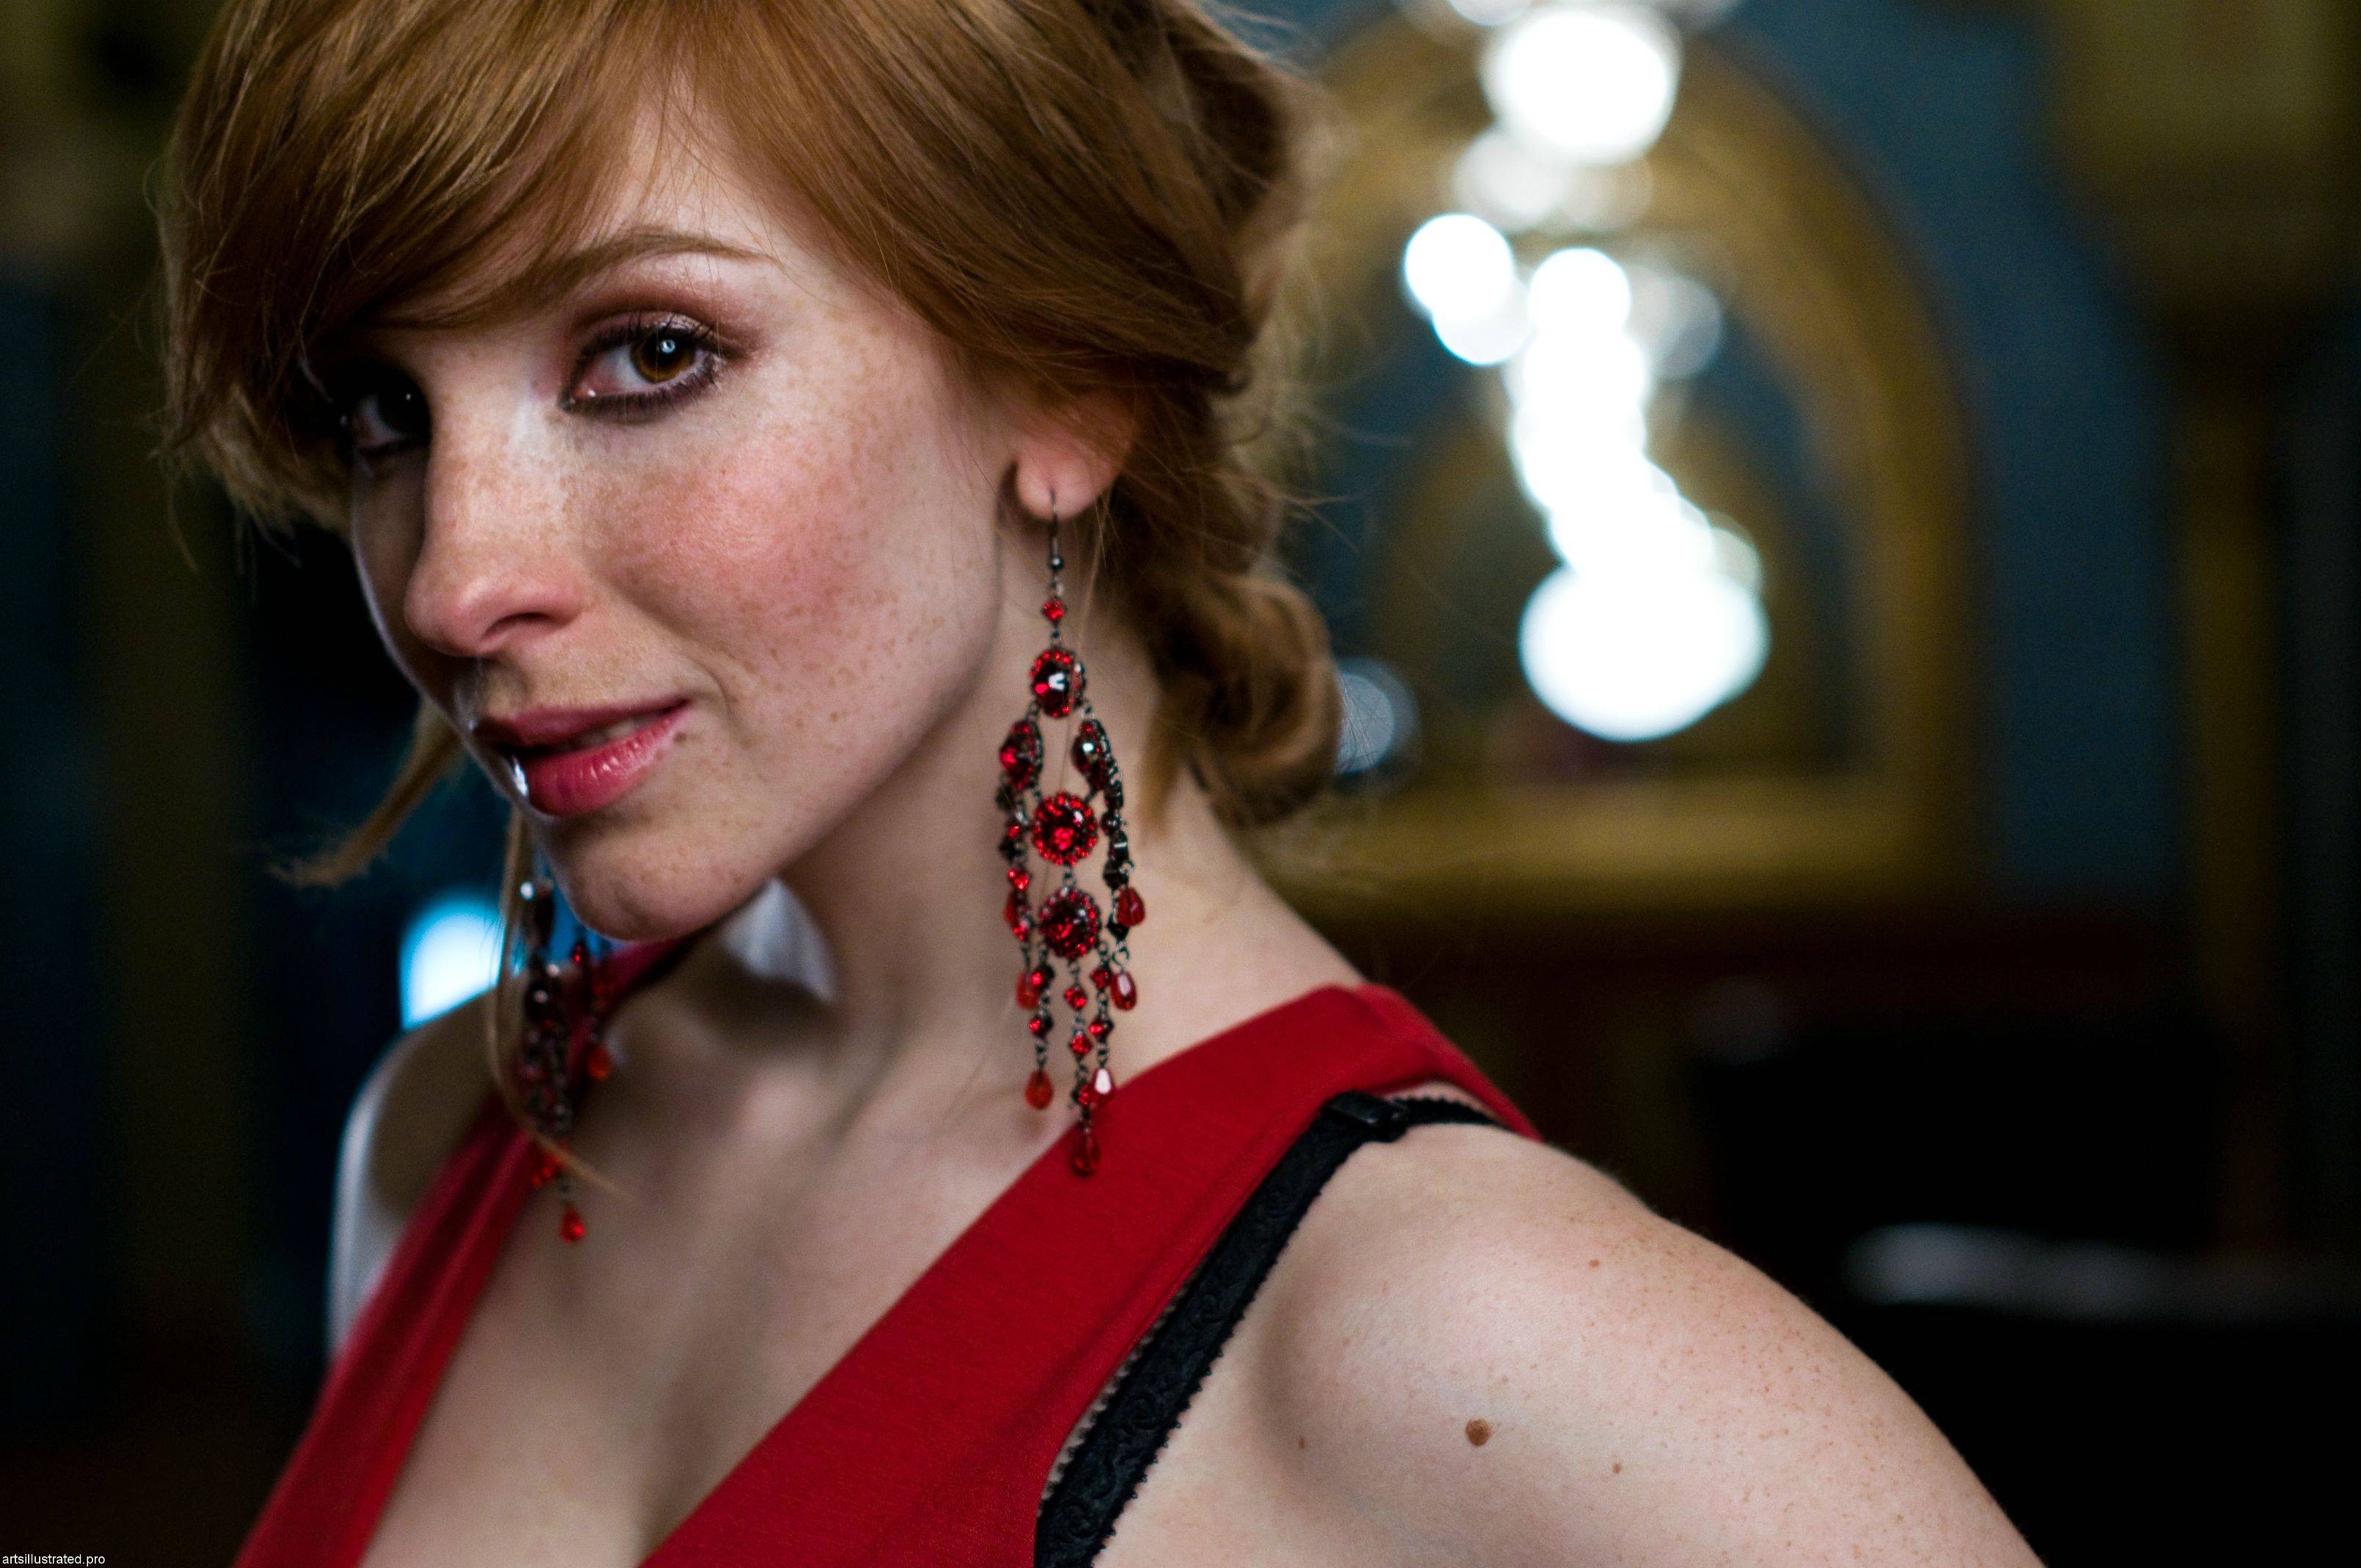 Women Actress Redhead Long Hair Vica Kerekes Freckles Face Long Earings 3216x2136